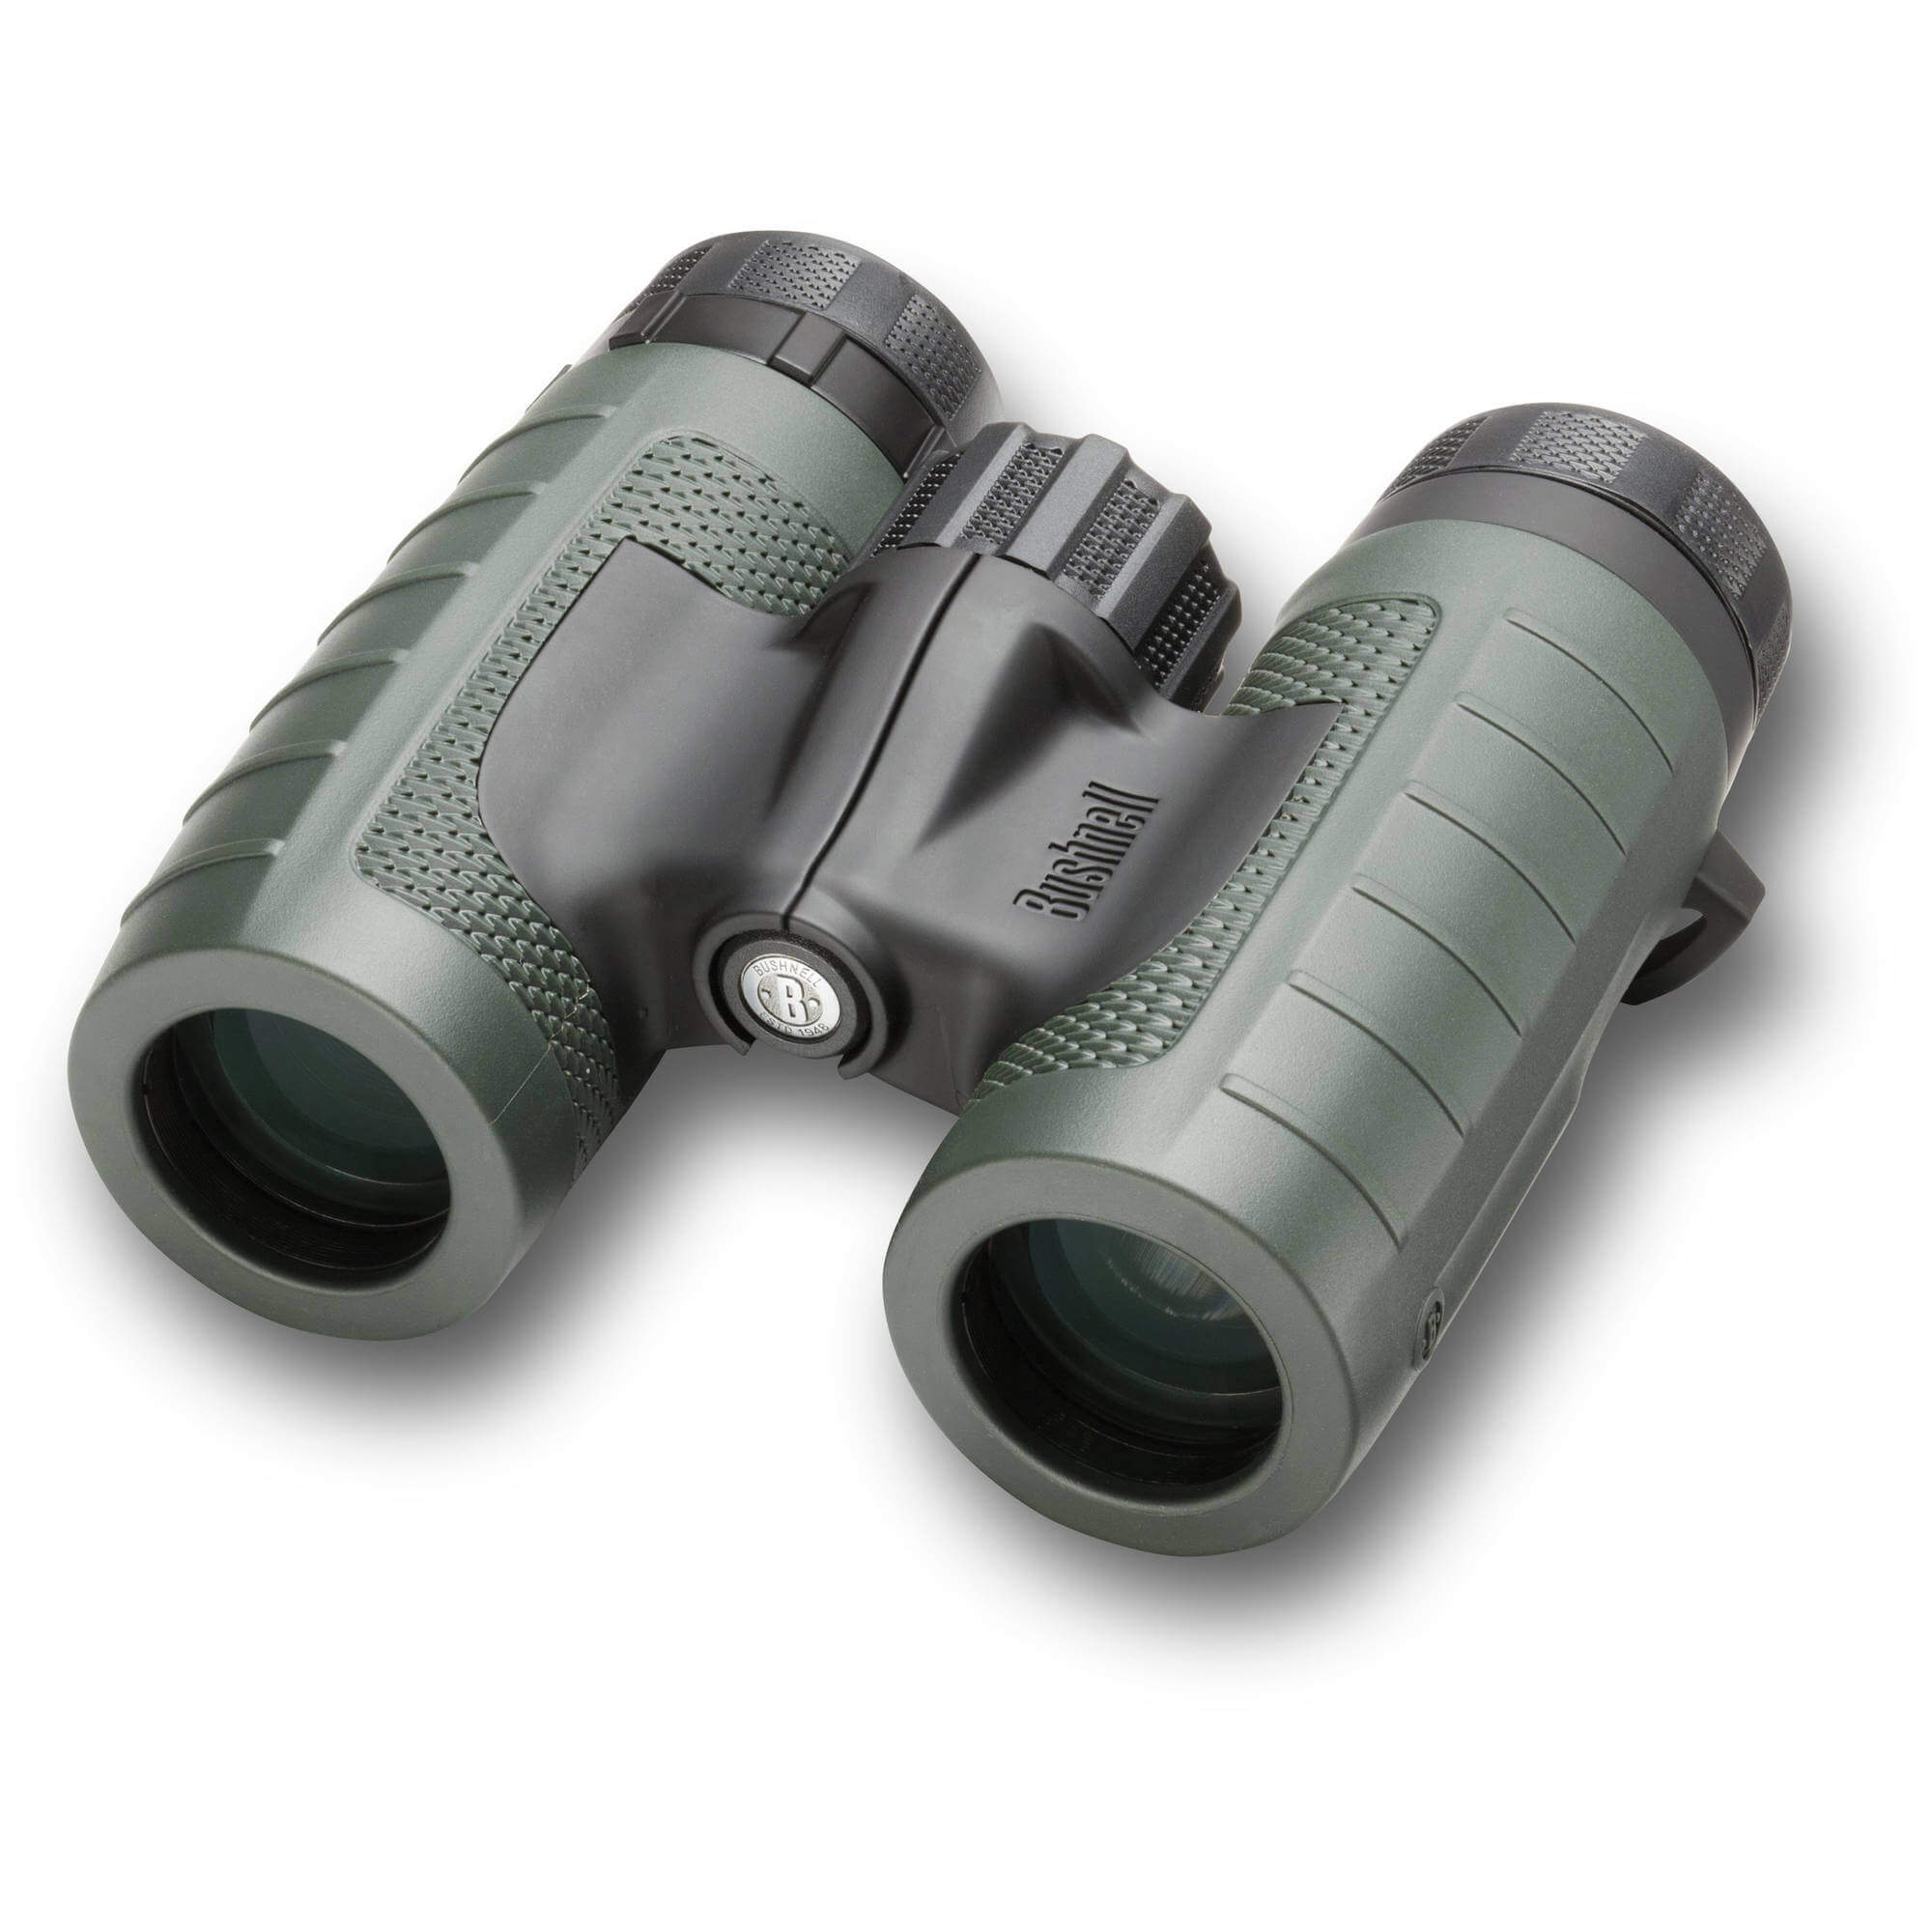 Bushnell Trophy XLT Roof Prism Binoculars